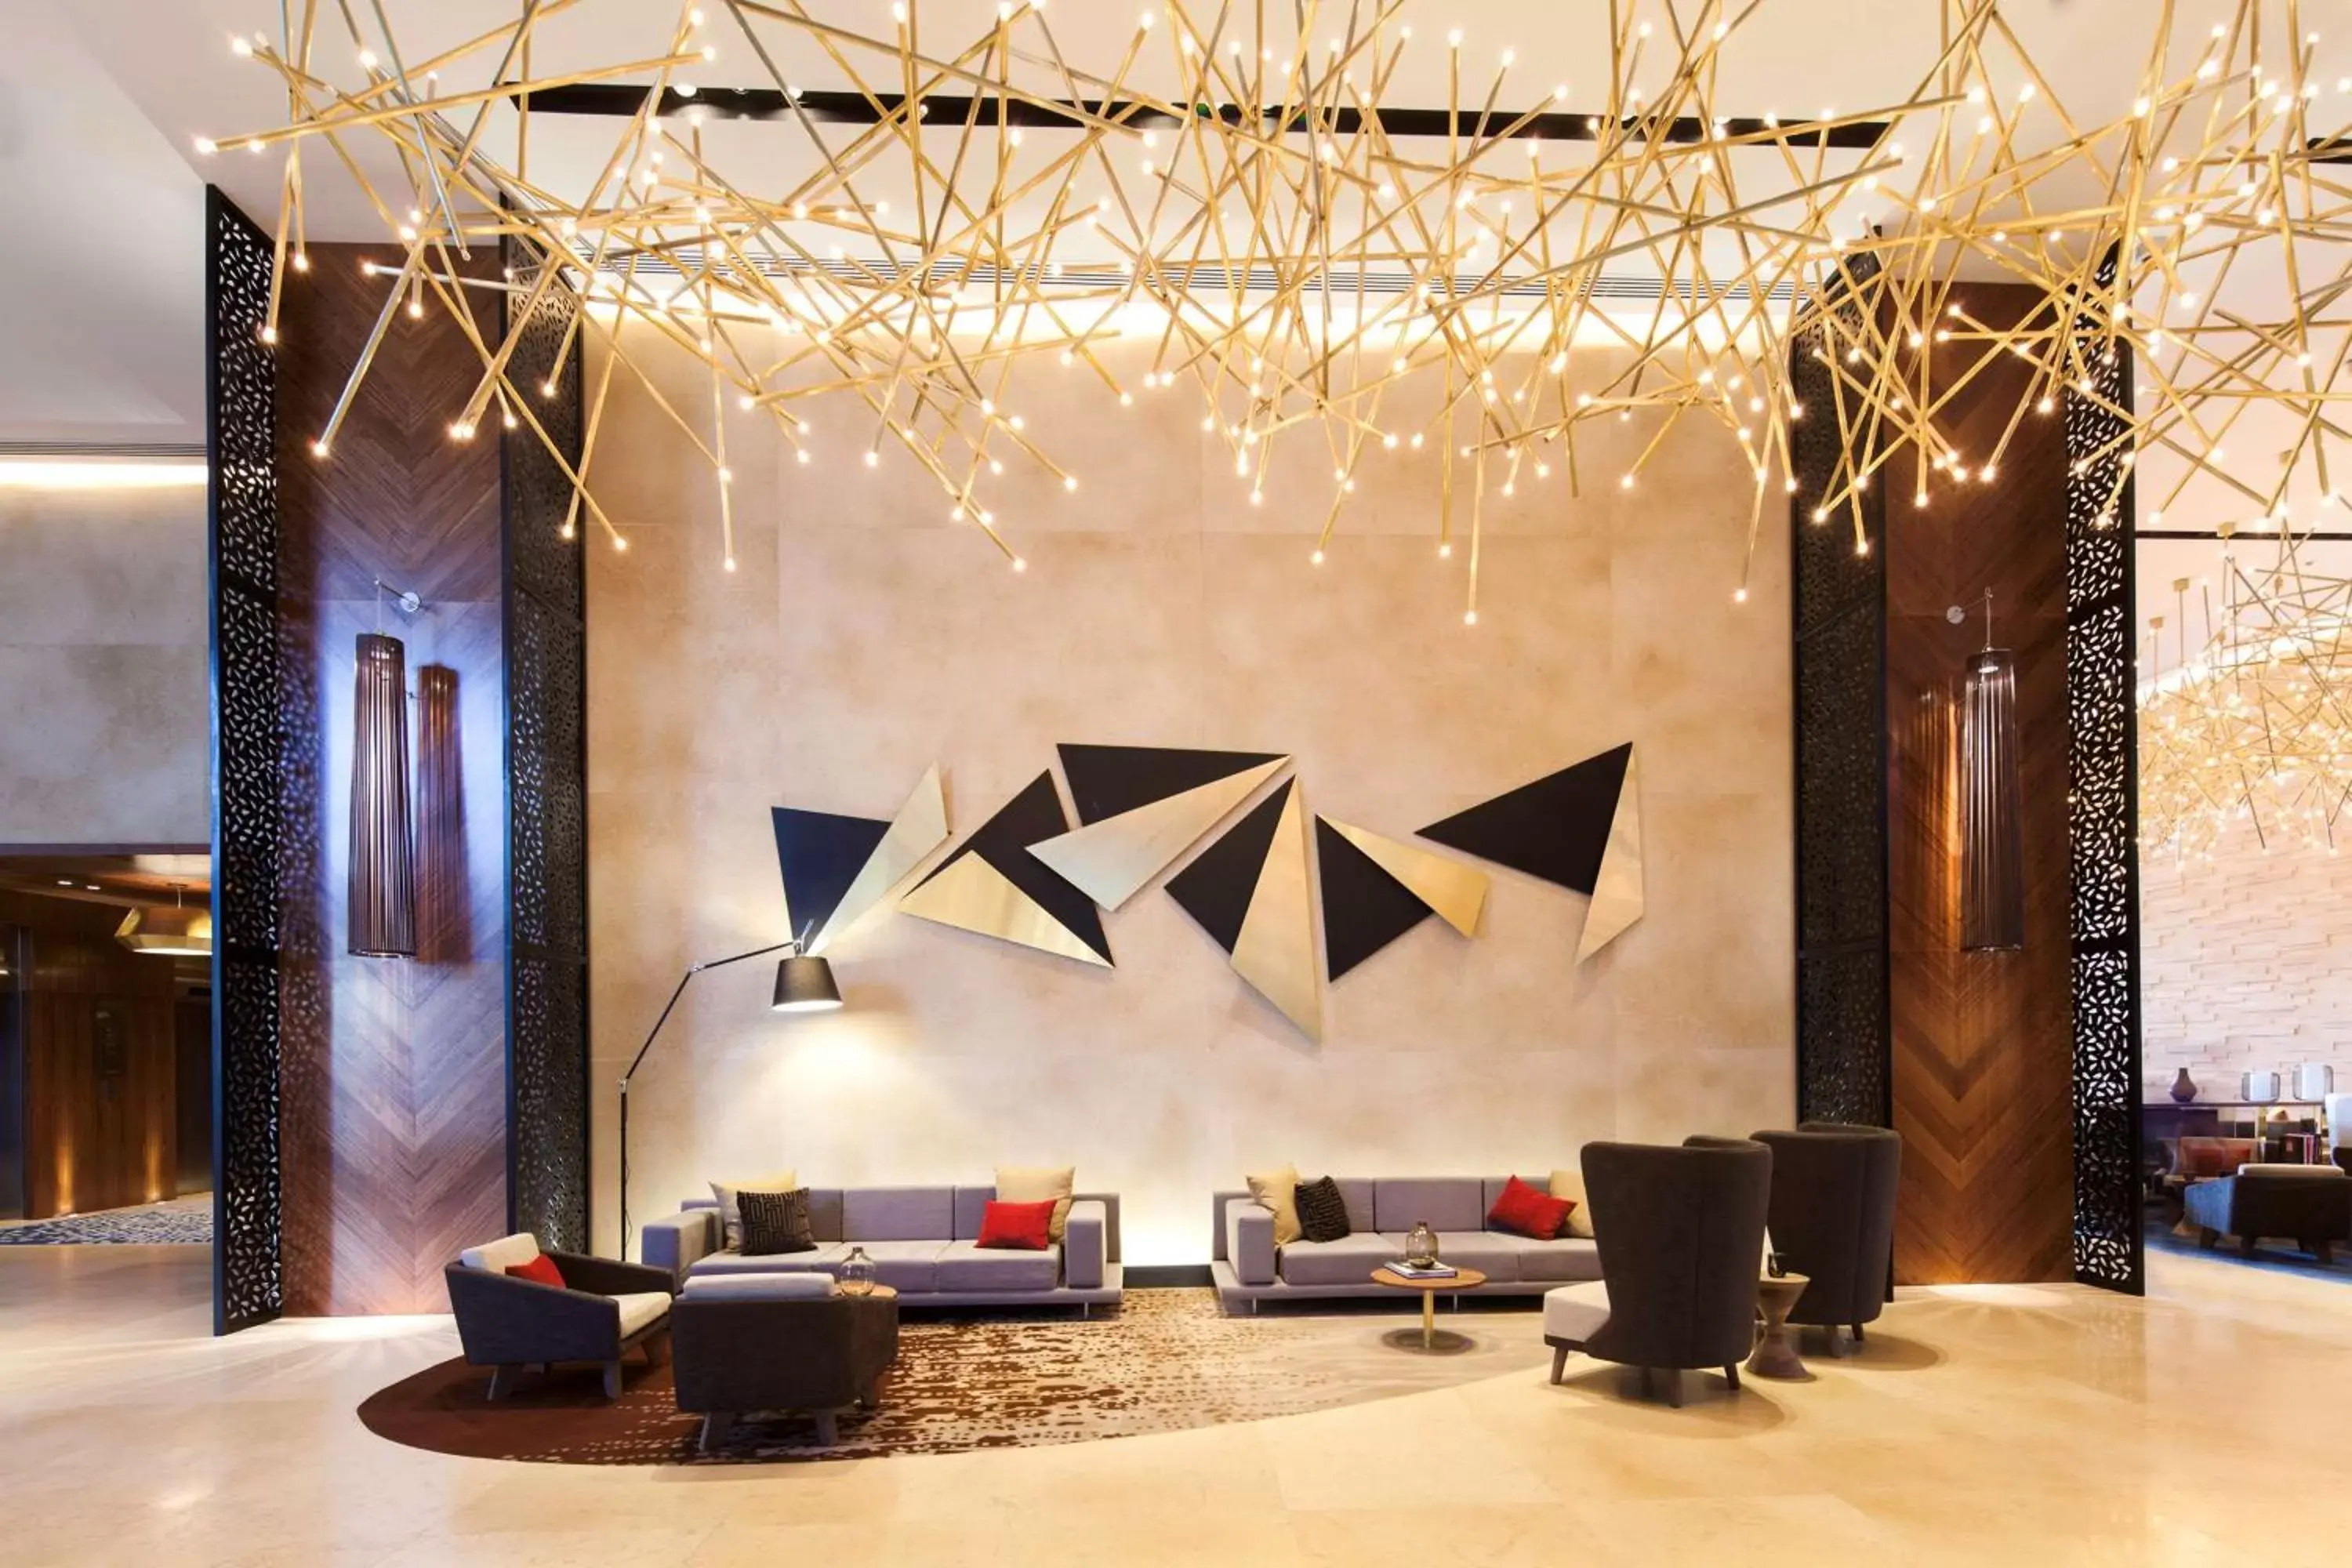 Lobby or reception in Hilton Mexico City Santa Fe